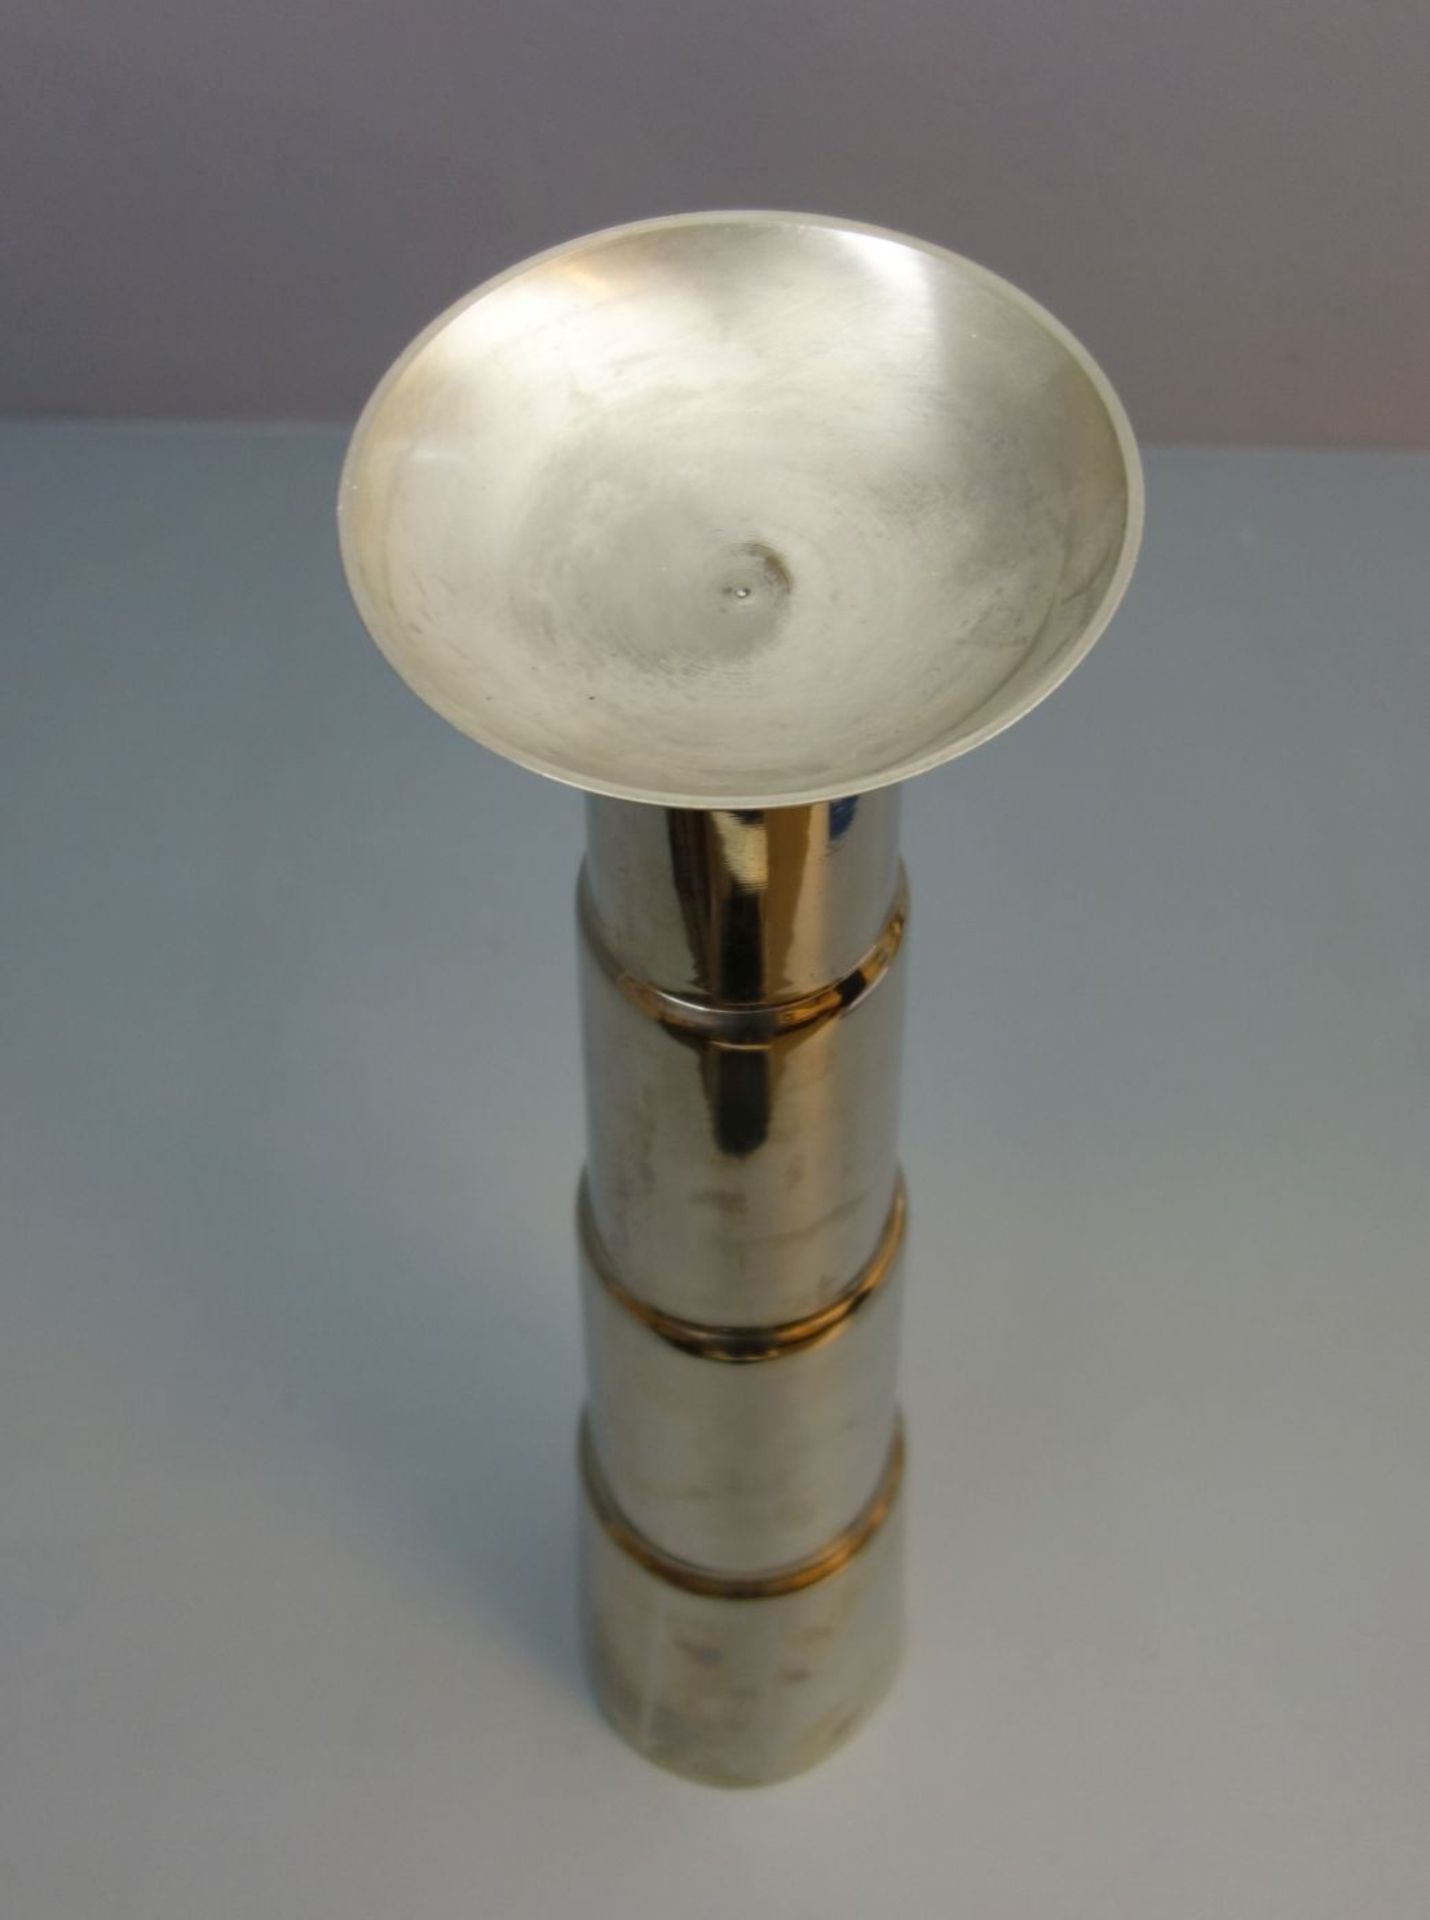 KERZENSTÄNDER / VASE / candleholder / vase, verchromtes Metall. Aufgewölbter Rundstand bzw. flach - Bild 3 aus 3